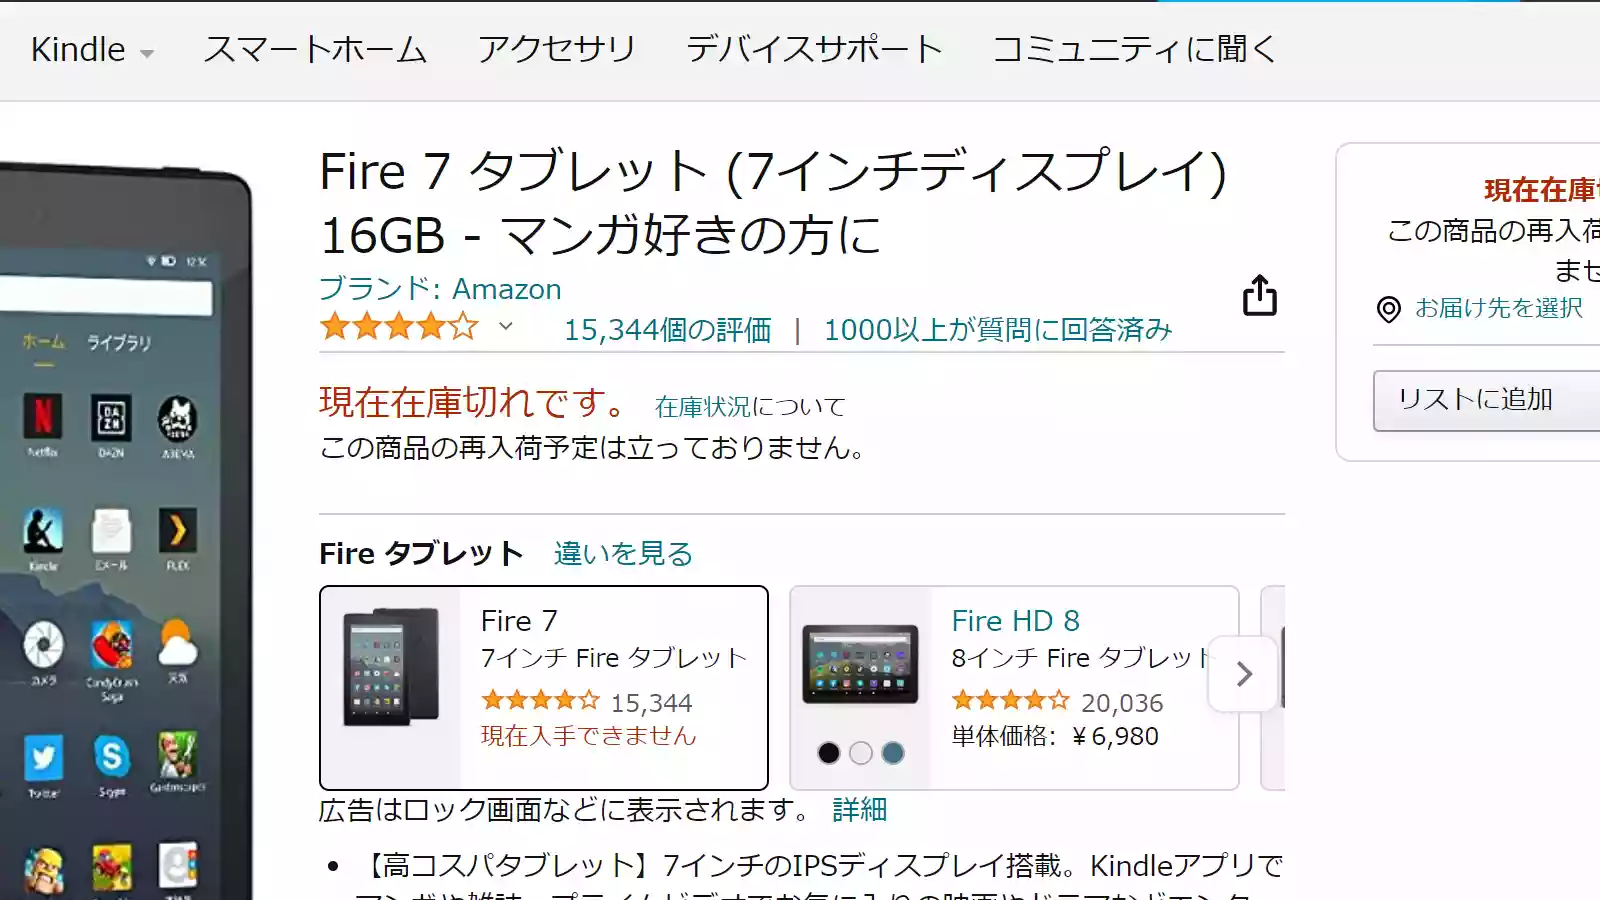 1050円 【安心発送】 Fire 7 タブレット 16GB